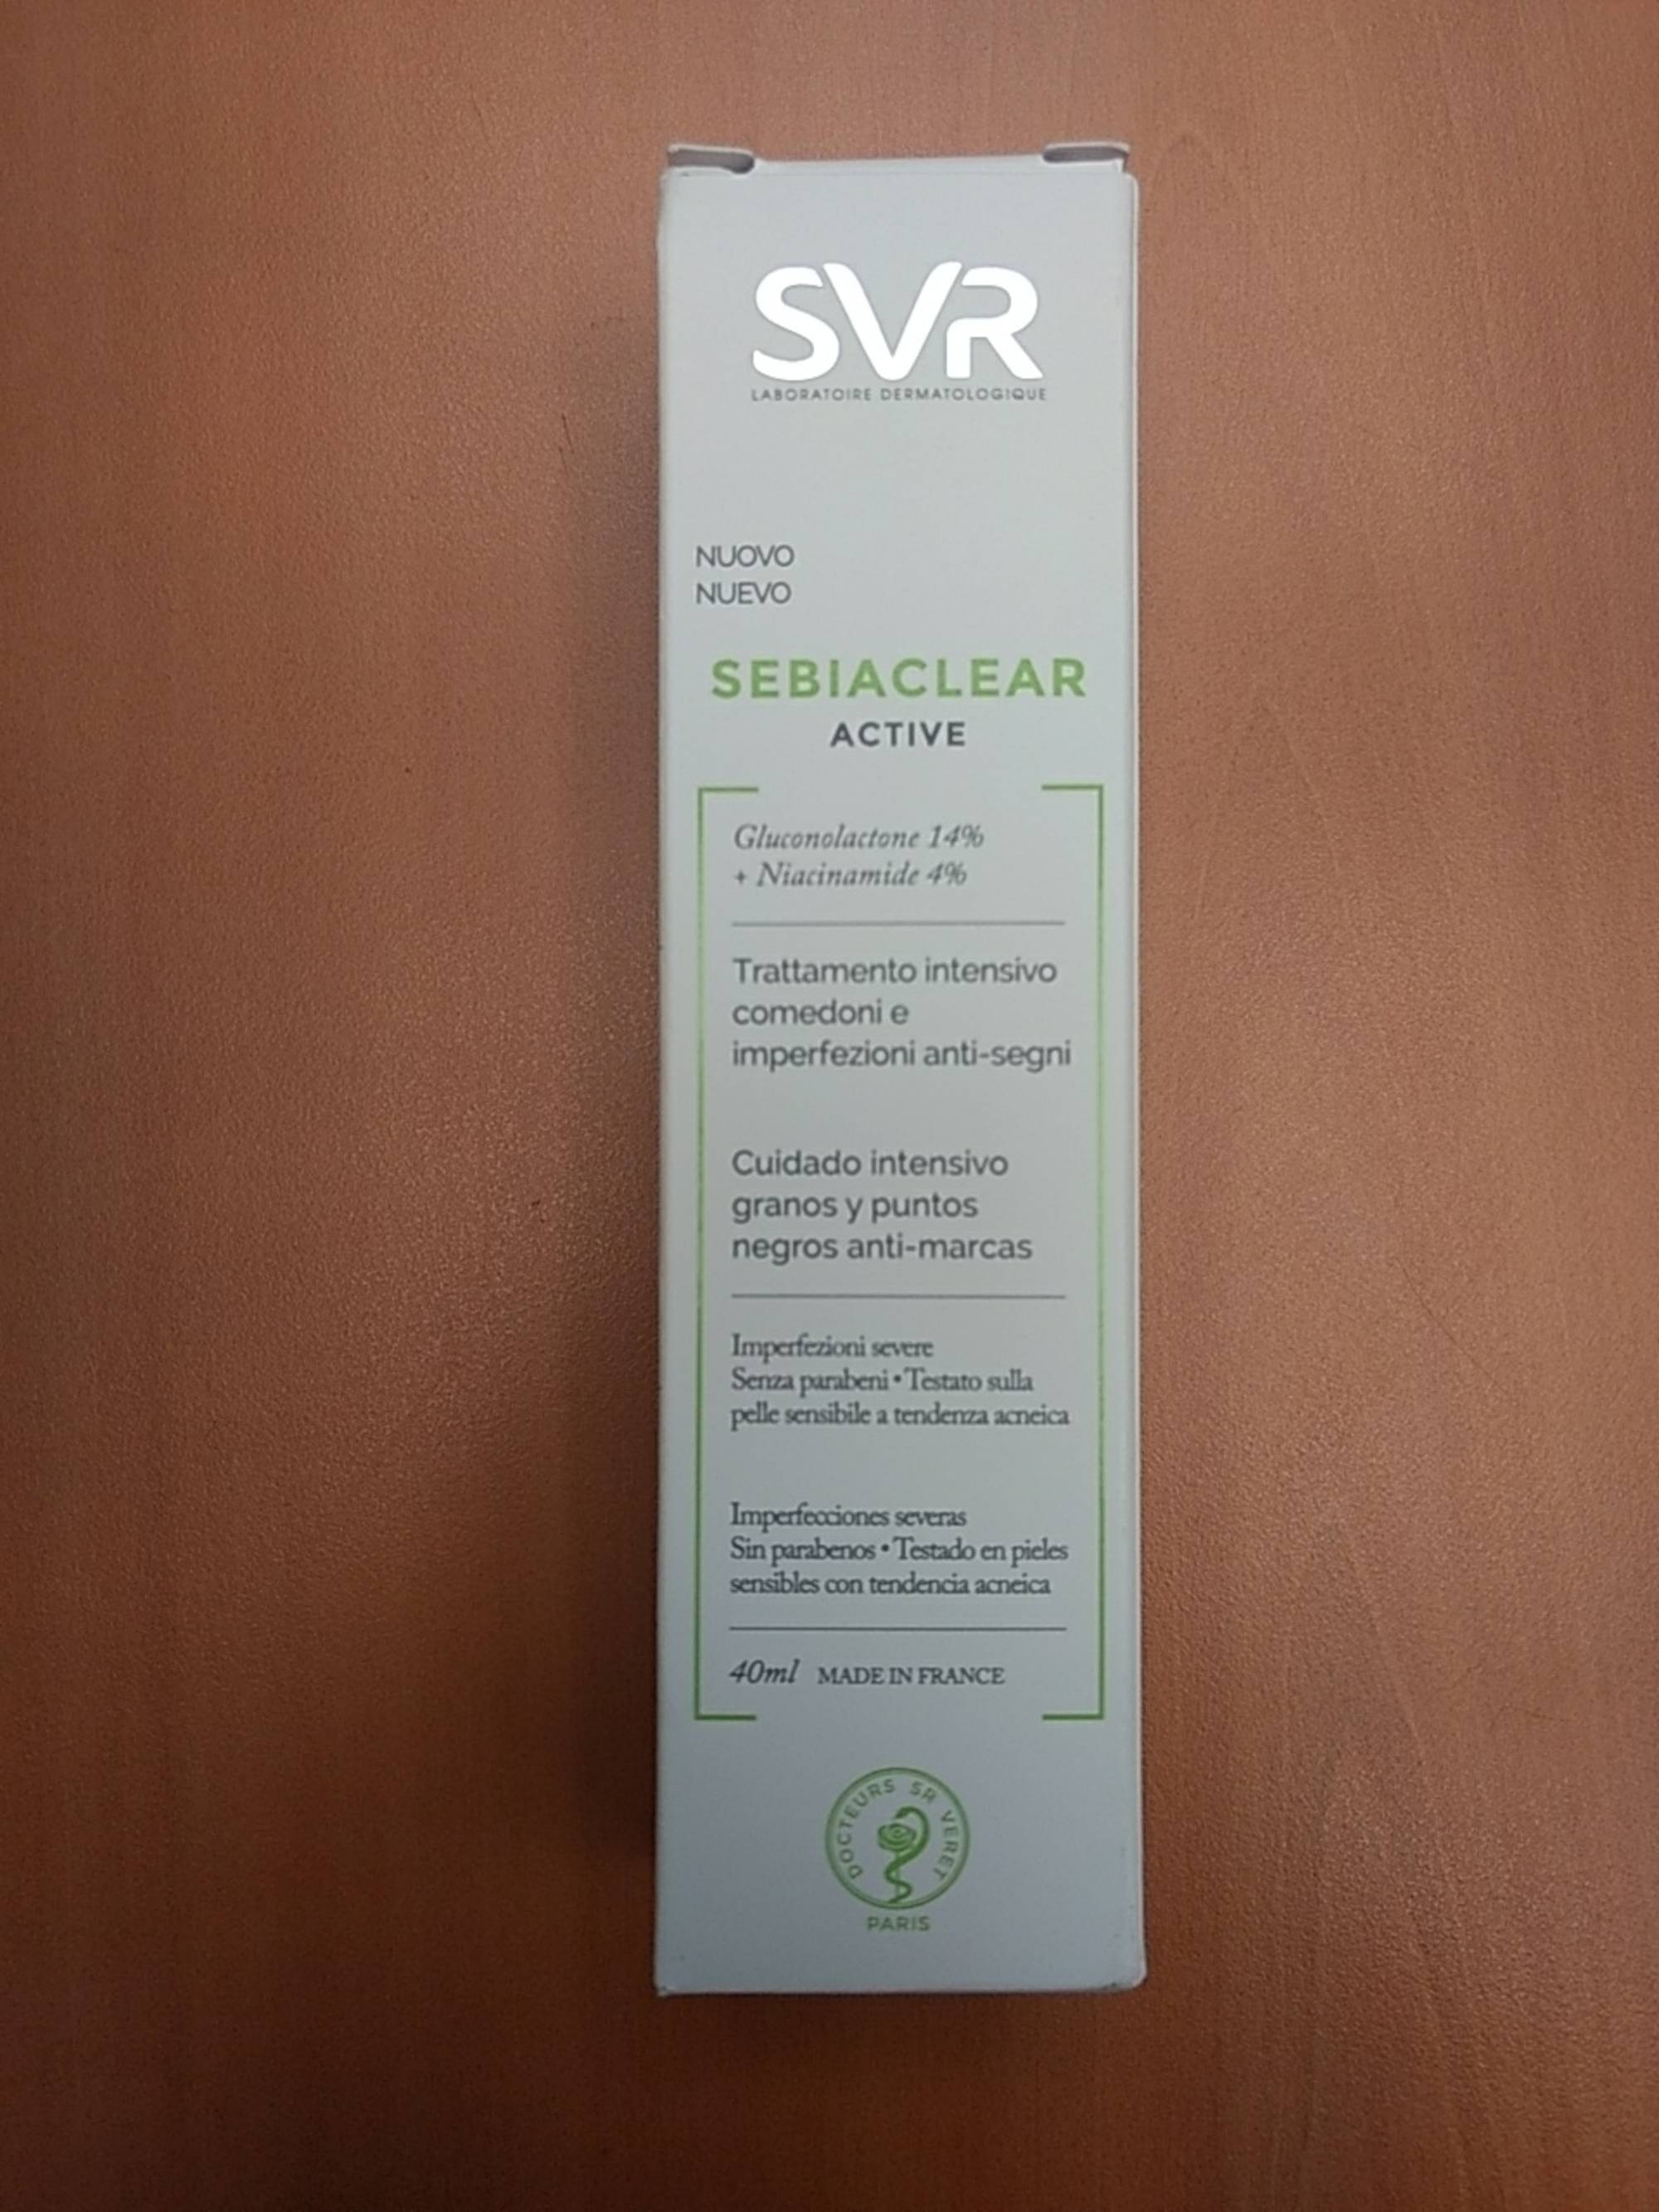 SVR - Sebiaclear active